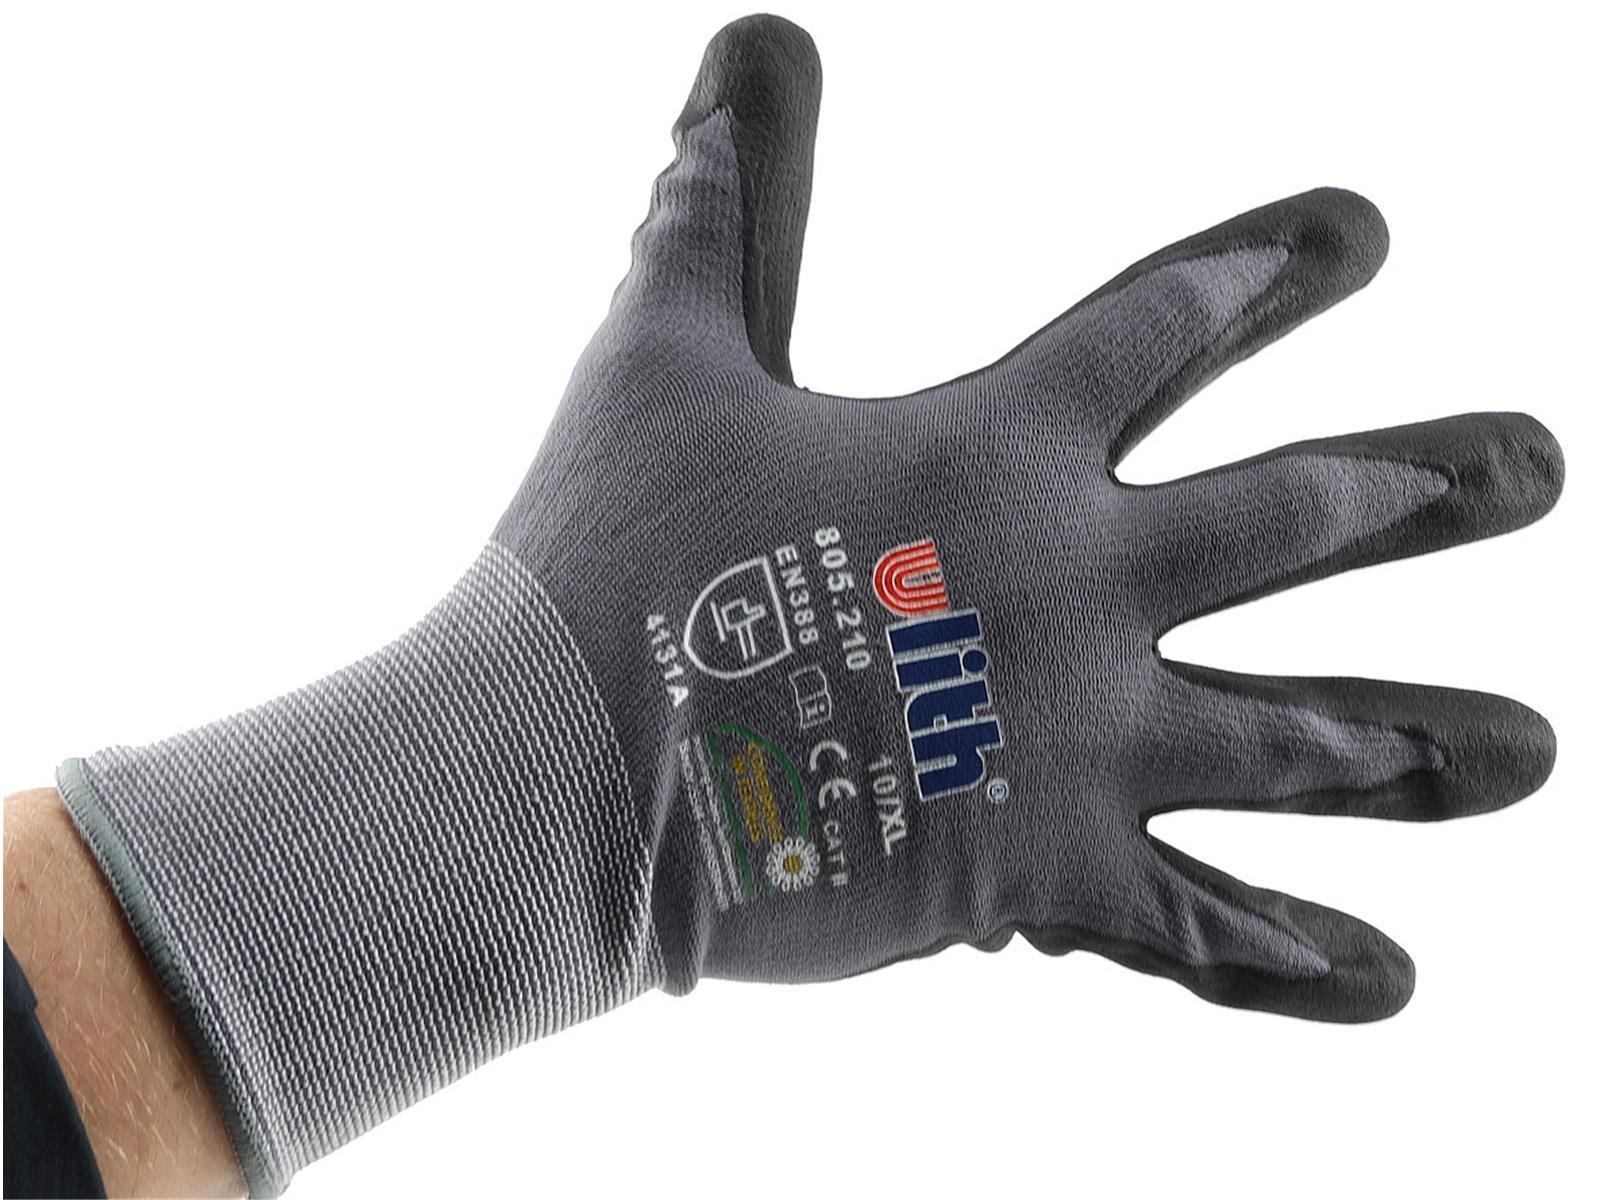 Profi Arbeits-Handschuhe mit Kautschuk-Beschichtung, Ökotex 100, Größe 9